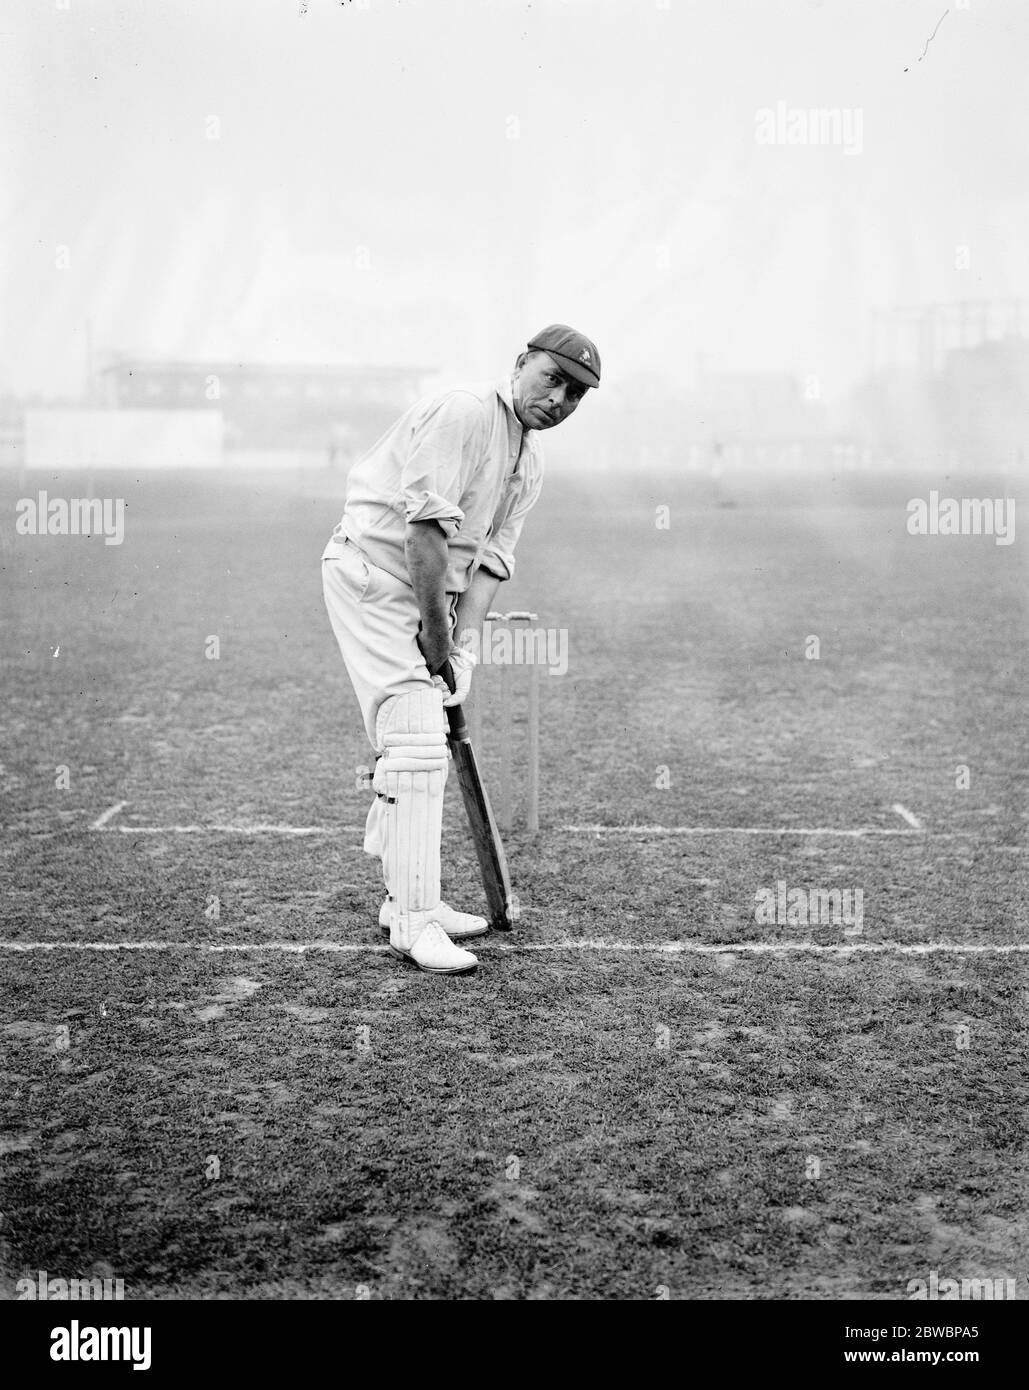 Les joueurs de cricket sud-africains pratiquent à l' Kennington Oval , Londres Claude carter ( Natal ) , qui joue au cricket de première classe depuis 25 ans . Il est considéré comme un remarquable lanceur de gauche 26 avril 1924 Banque D'Images